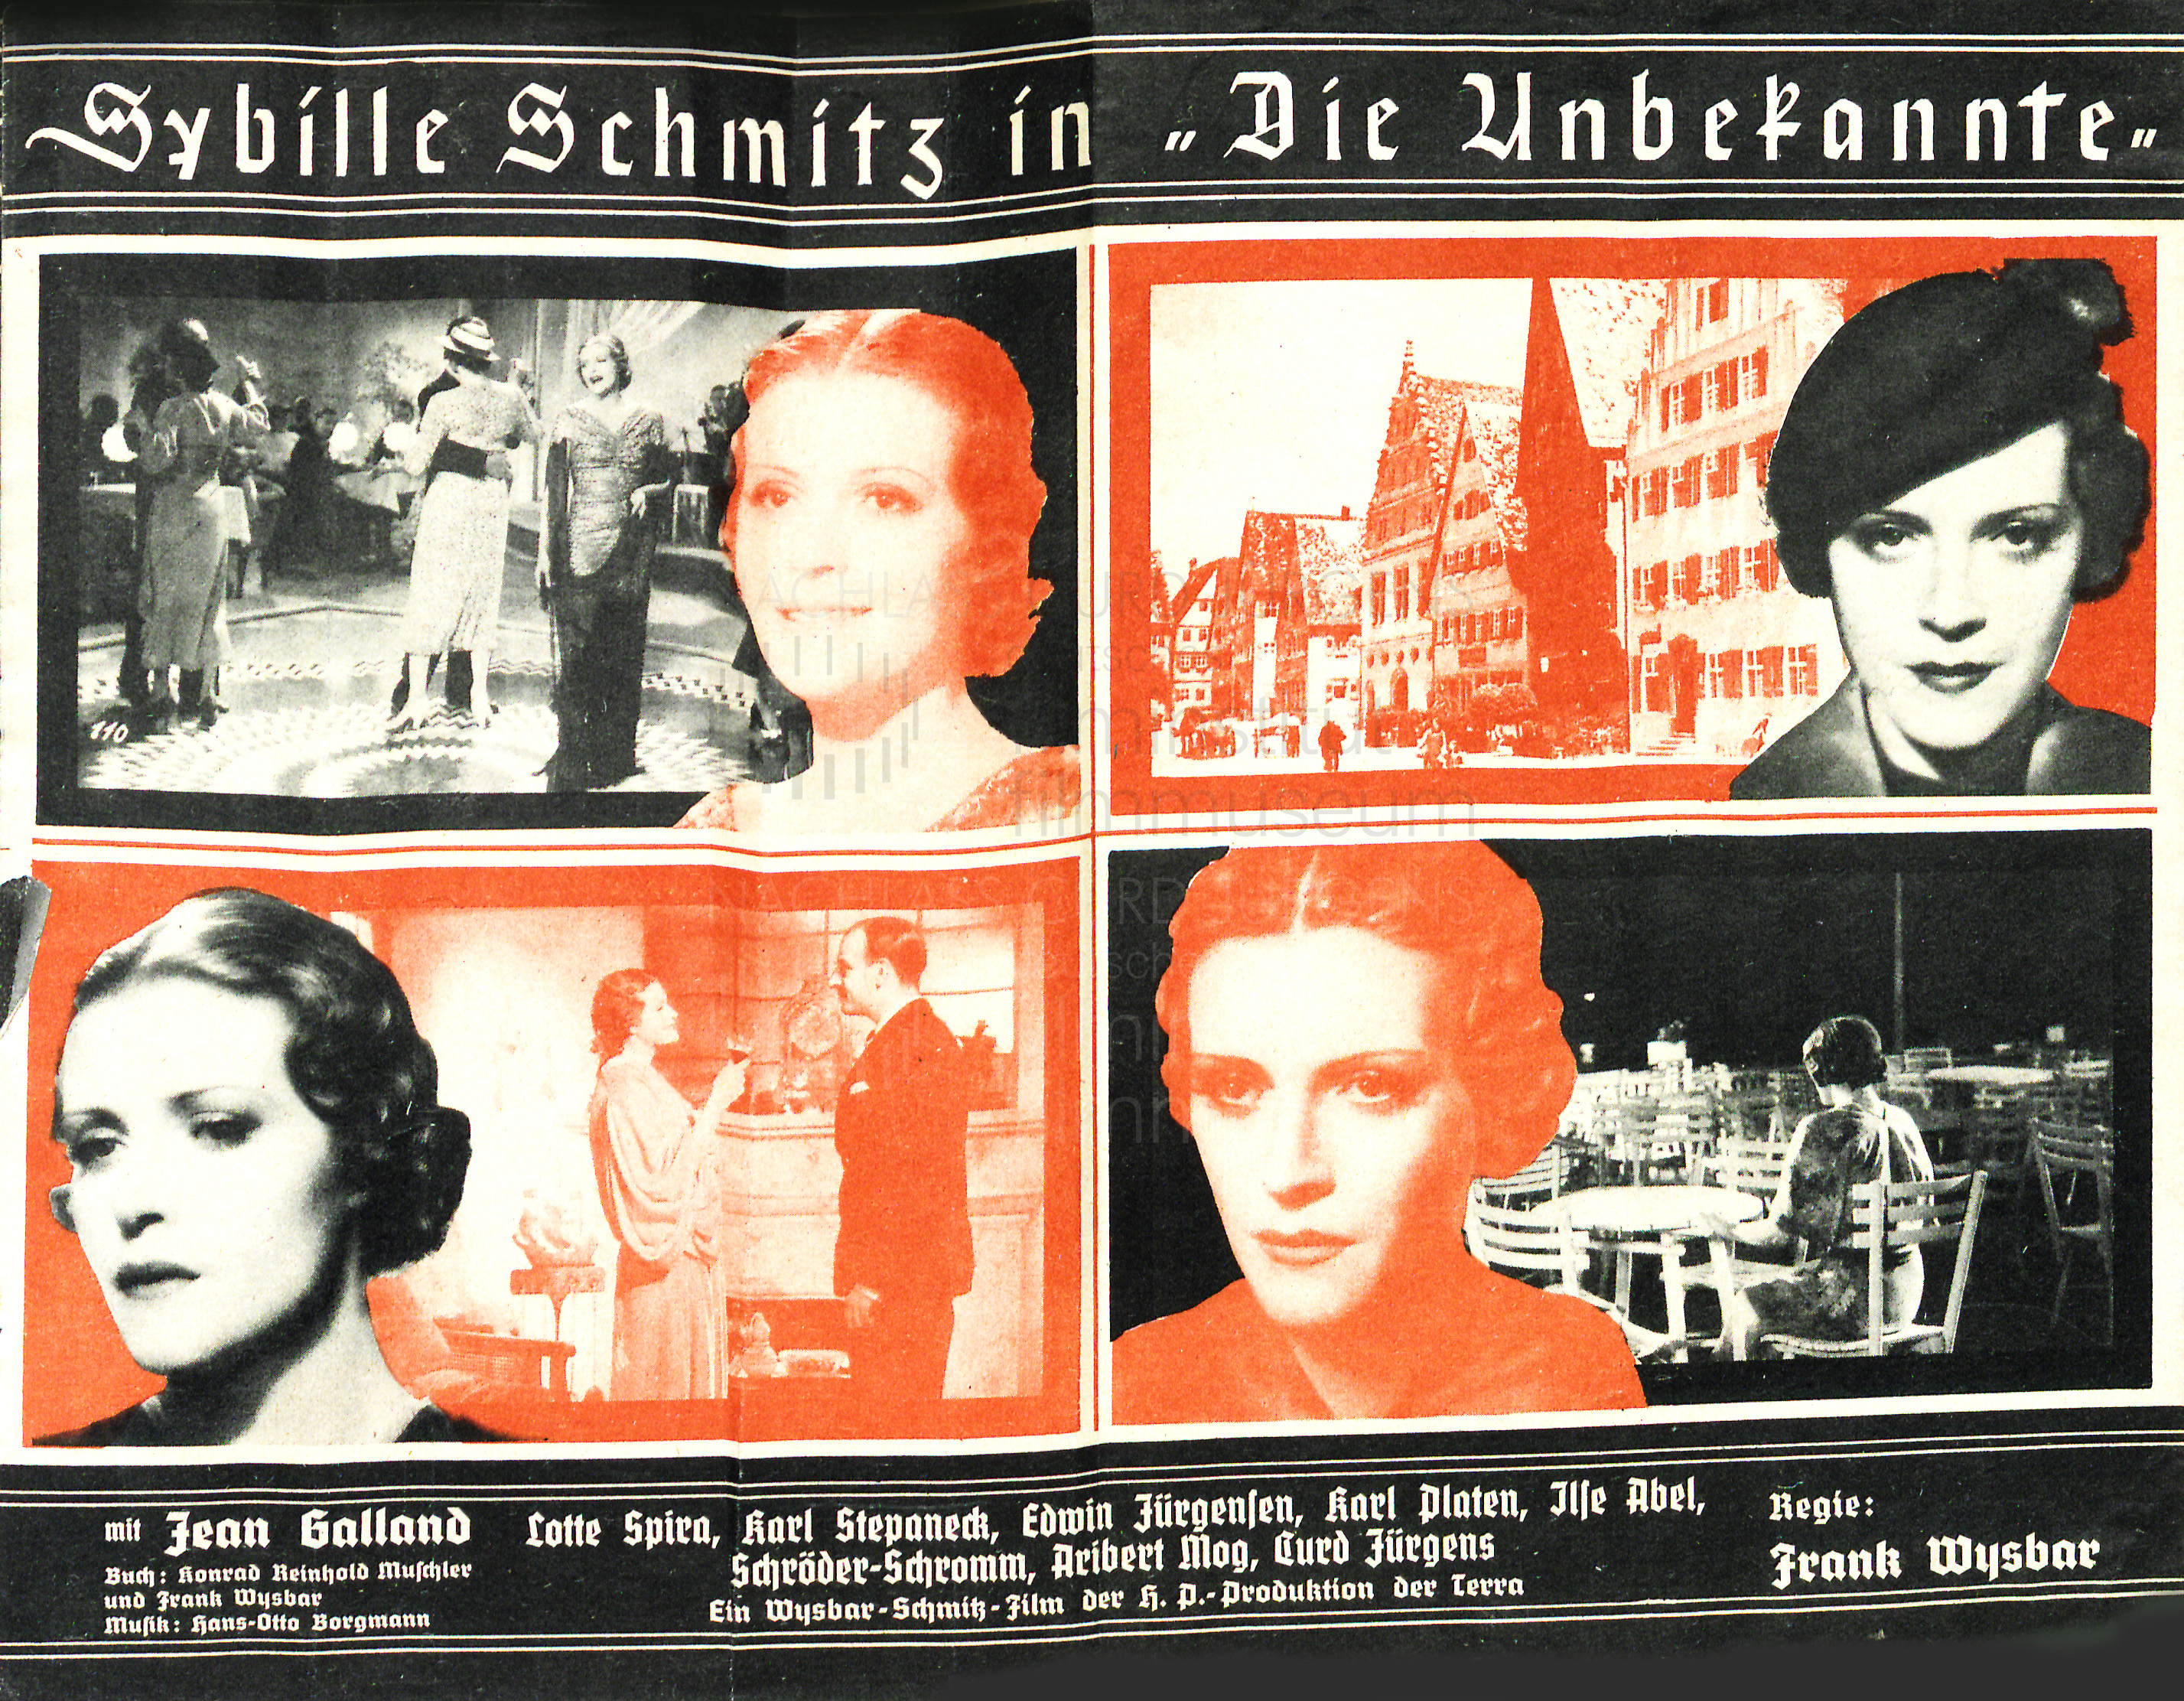 DIE UNBEKANNTE (1936)